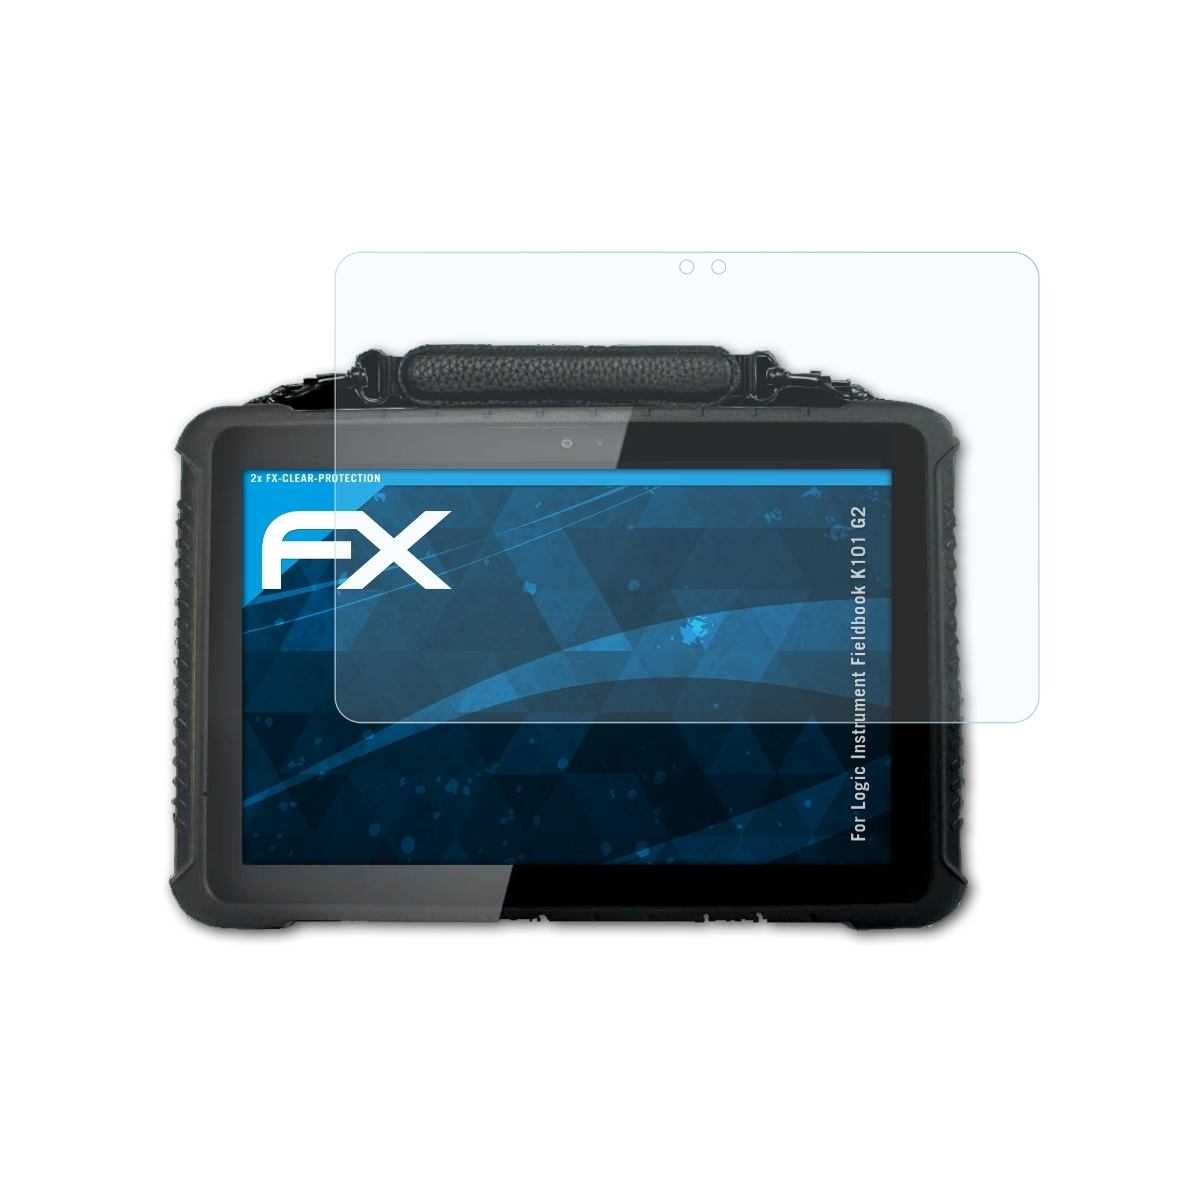 ATFOLIX 2x FX-Clear Displayschutz(für Logic Instrument Fieldbook G2) K101